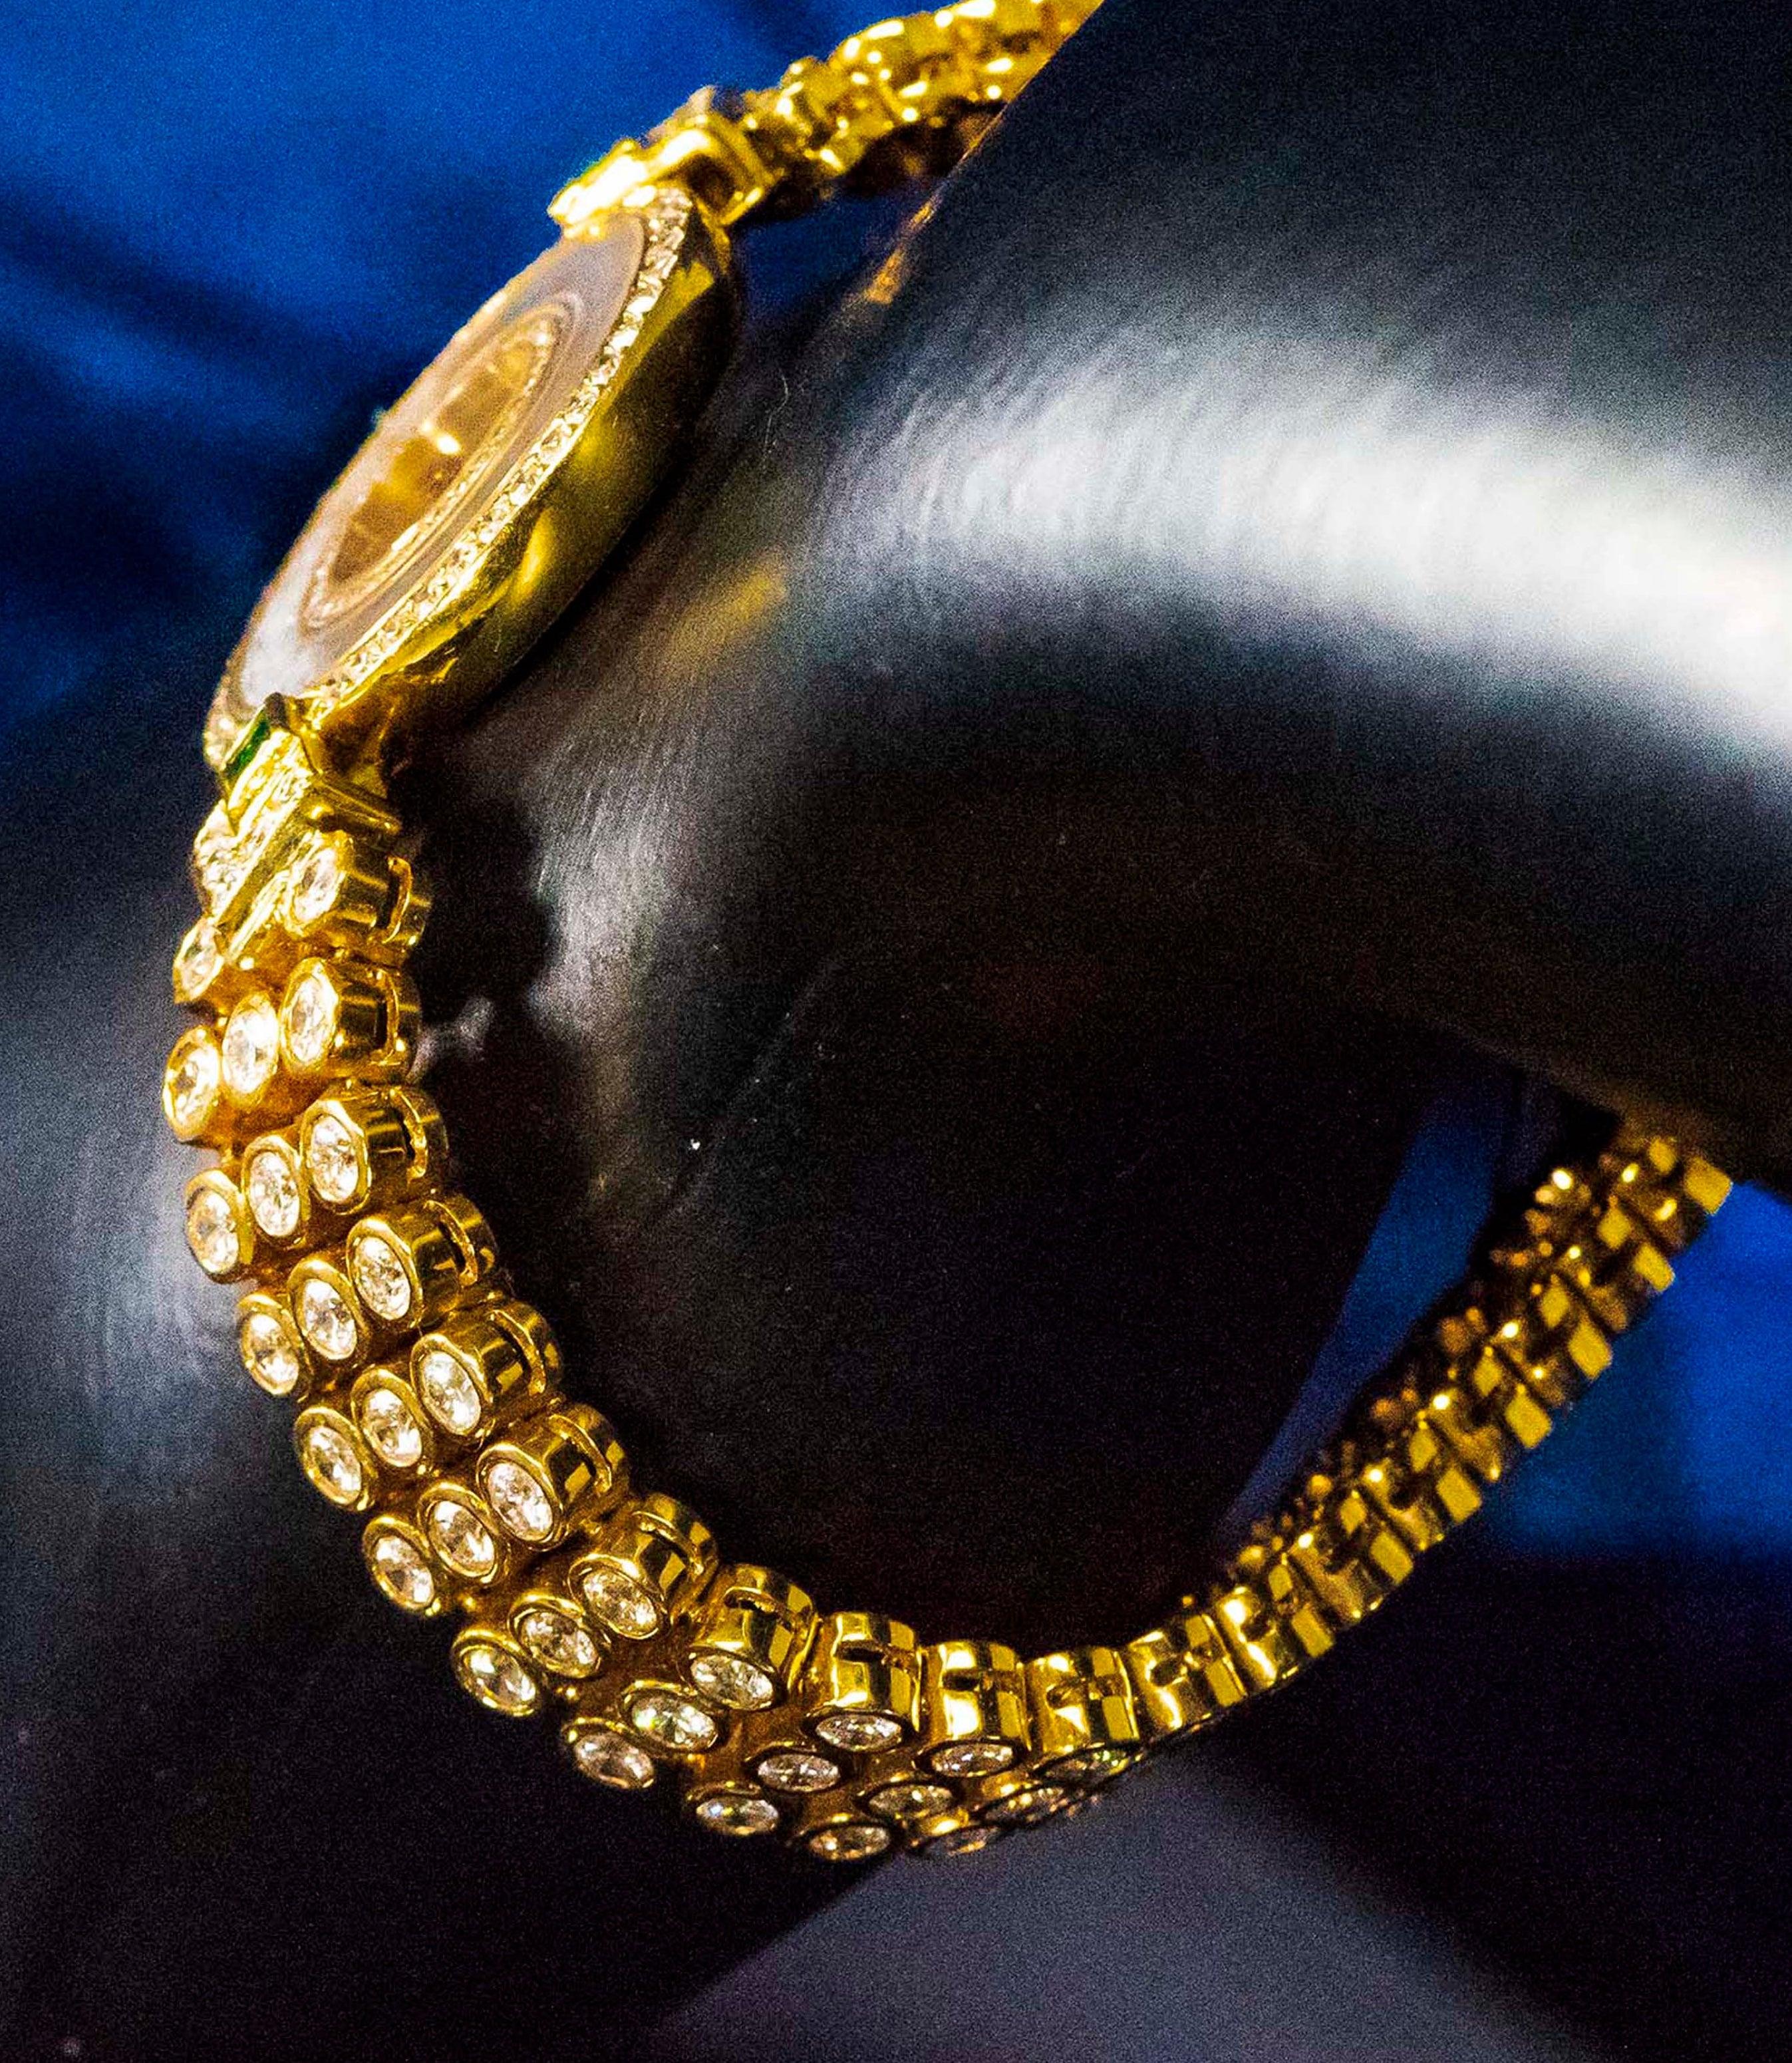 Women's or Men's 1980s-1990s Chopard Happy Diamond Emerald Approx 14 Carat Bracelet Watch